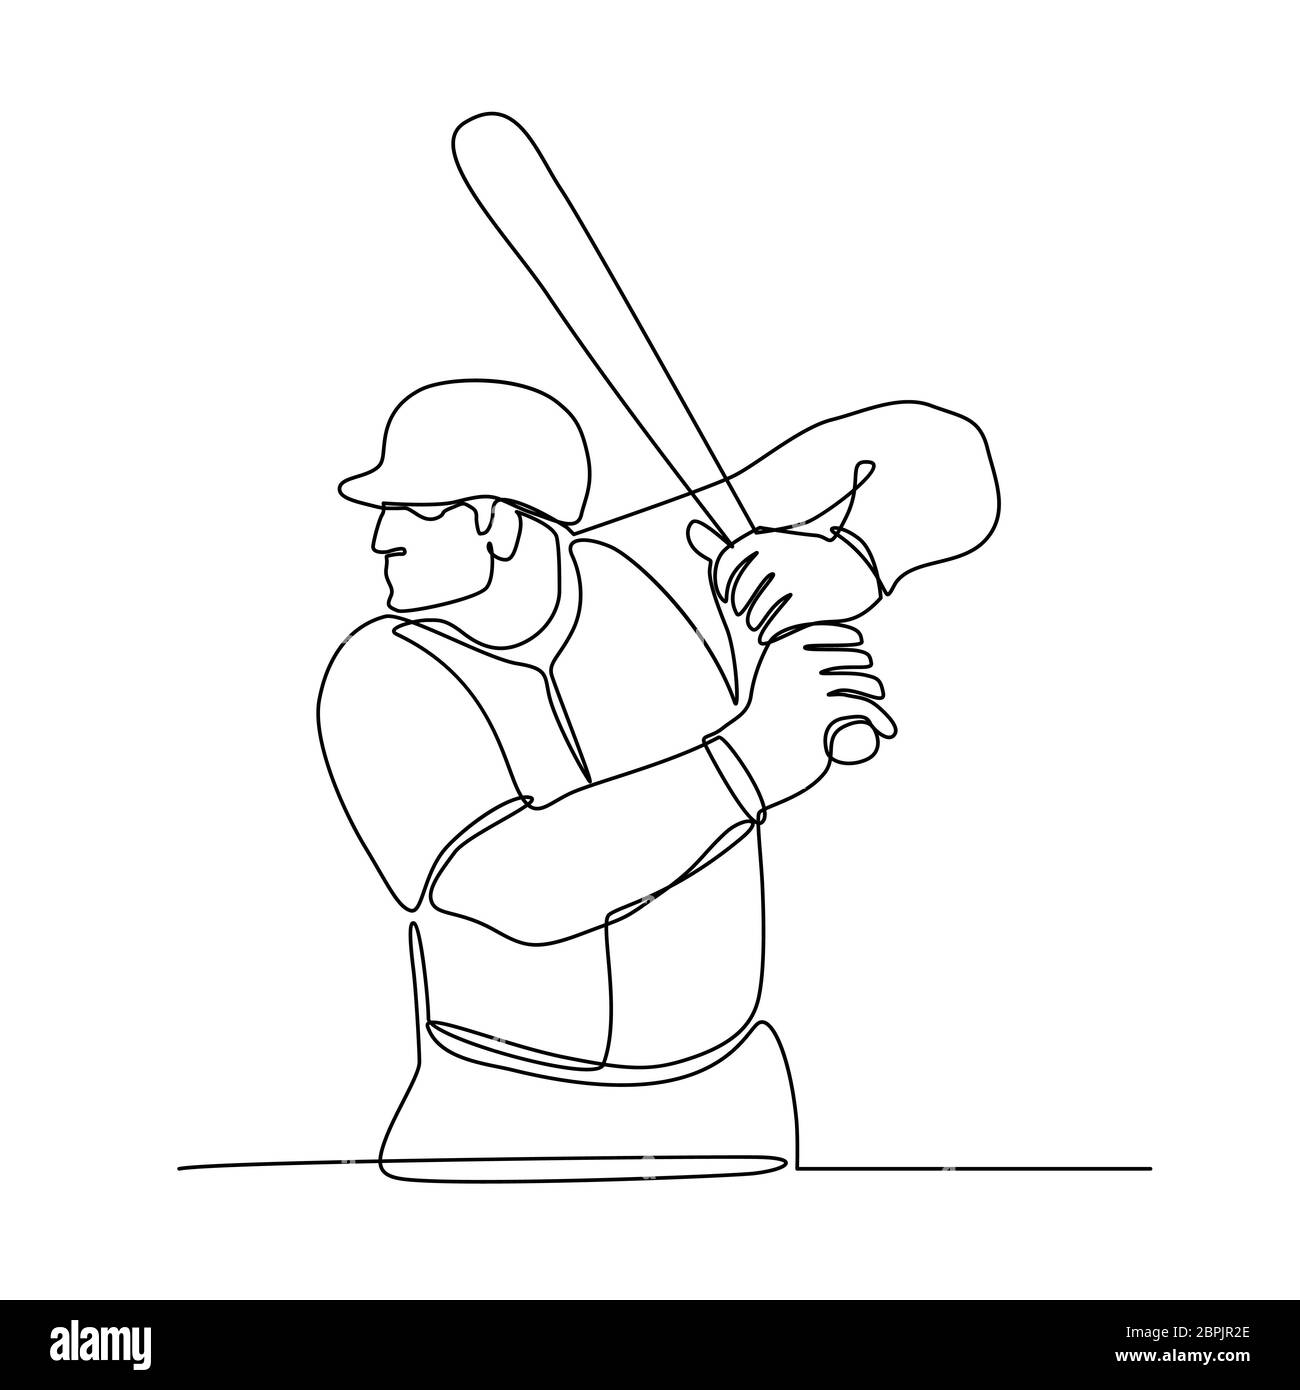 Linea continua illustrazione di un giocatore di baseball con bat batting visto dal lato fatto in bianco e nero in stile monolinea. Foto Stock